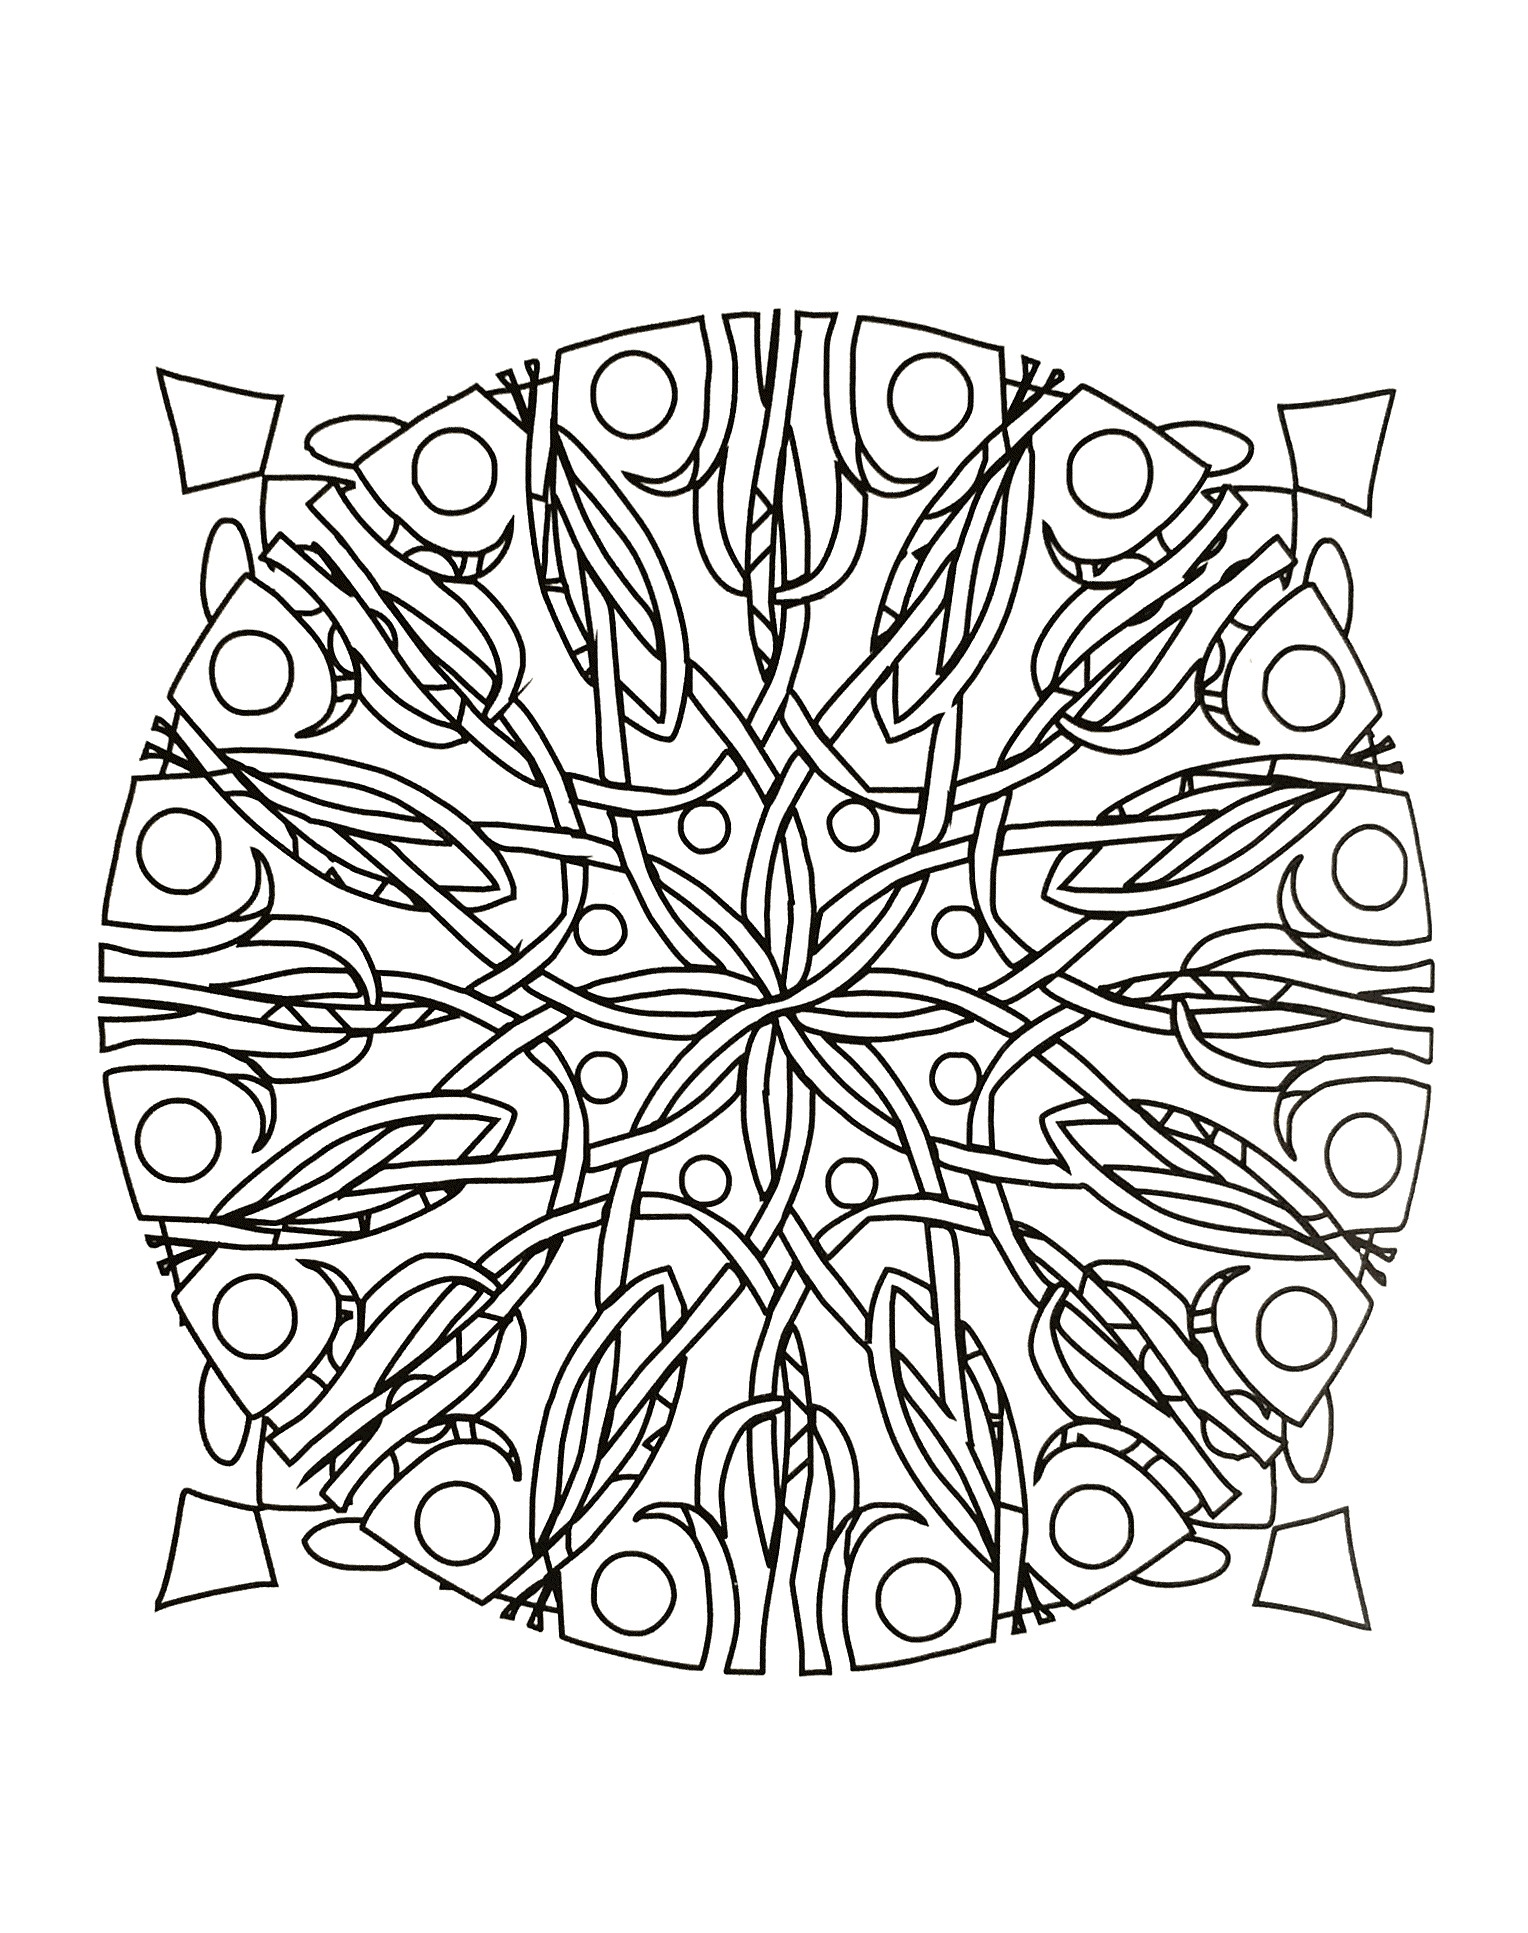 Préparez vos feutres et crayons pour réaliser la mise en couleur de ce Mandala étoilé plein de petits détails et zones intriquées.